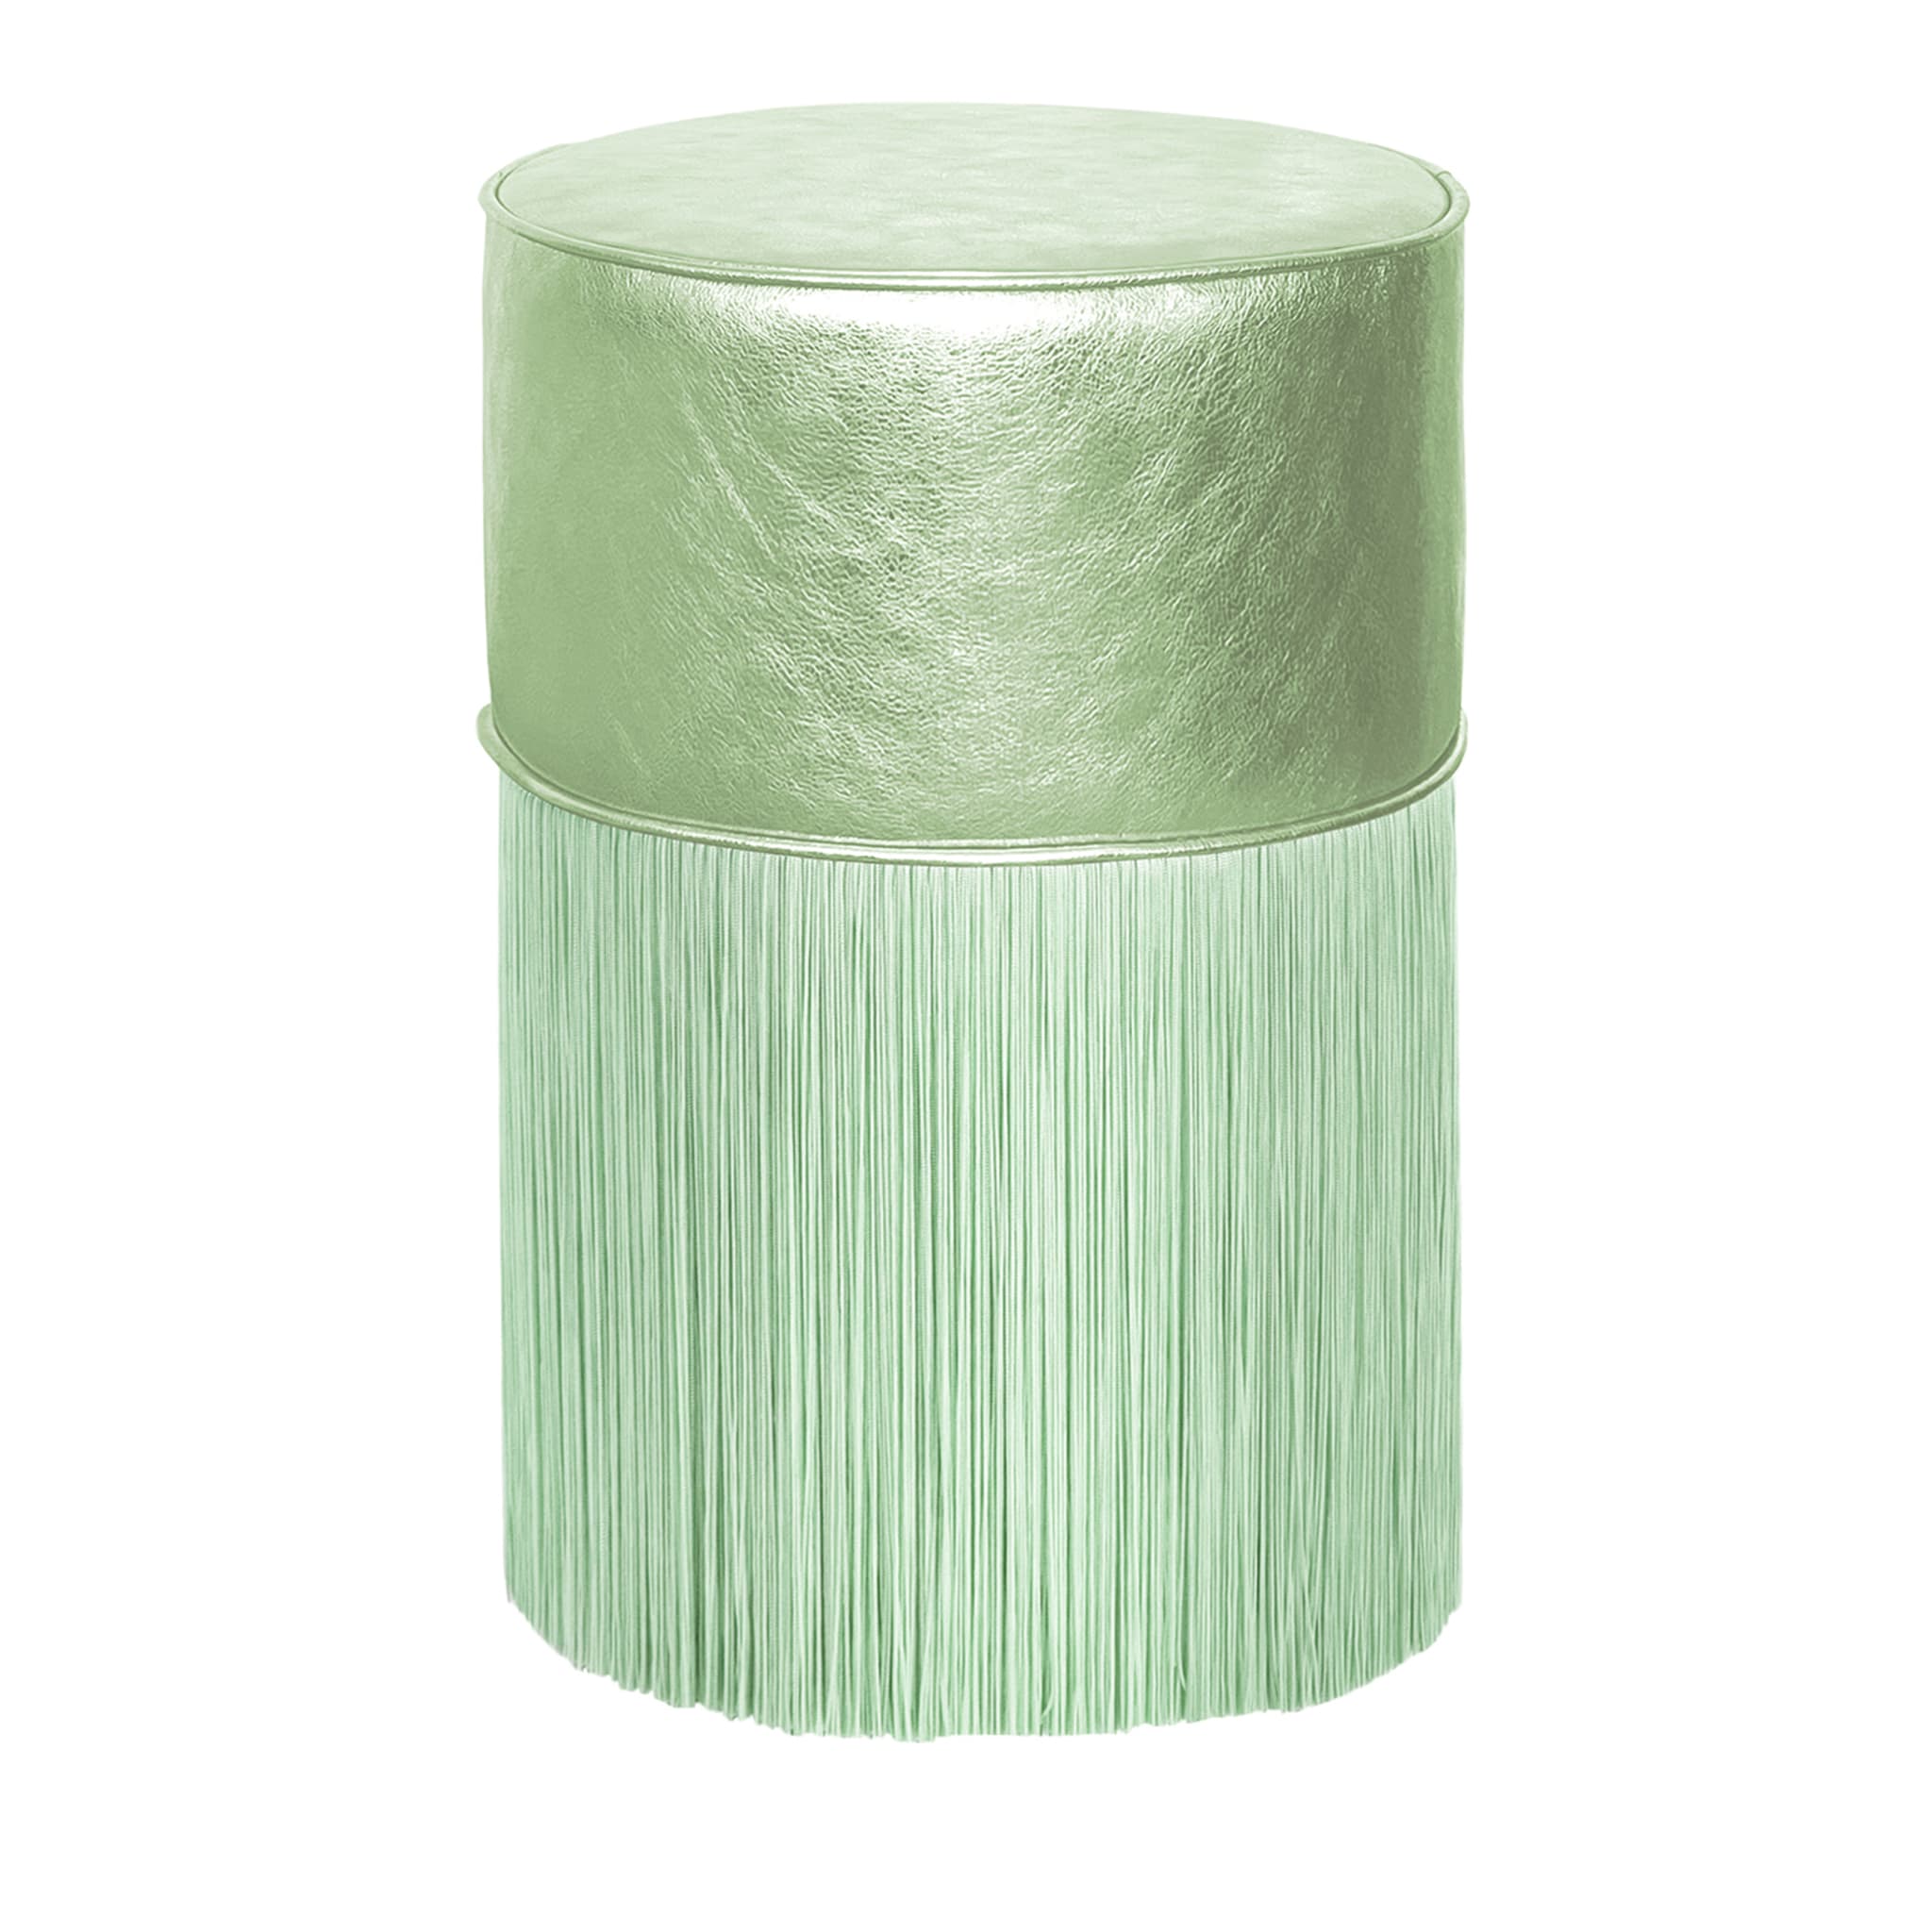 Puf de piel metalizada verde claro brillante de Lorenza Bozzoli - Vista principal